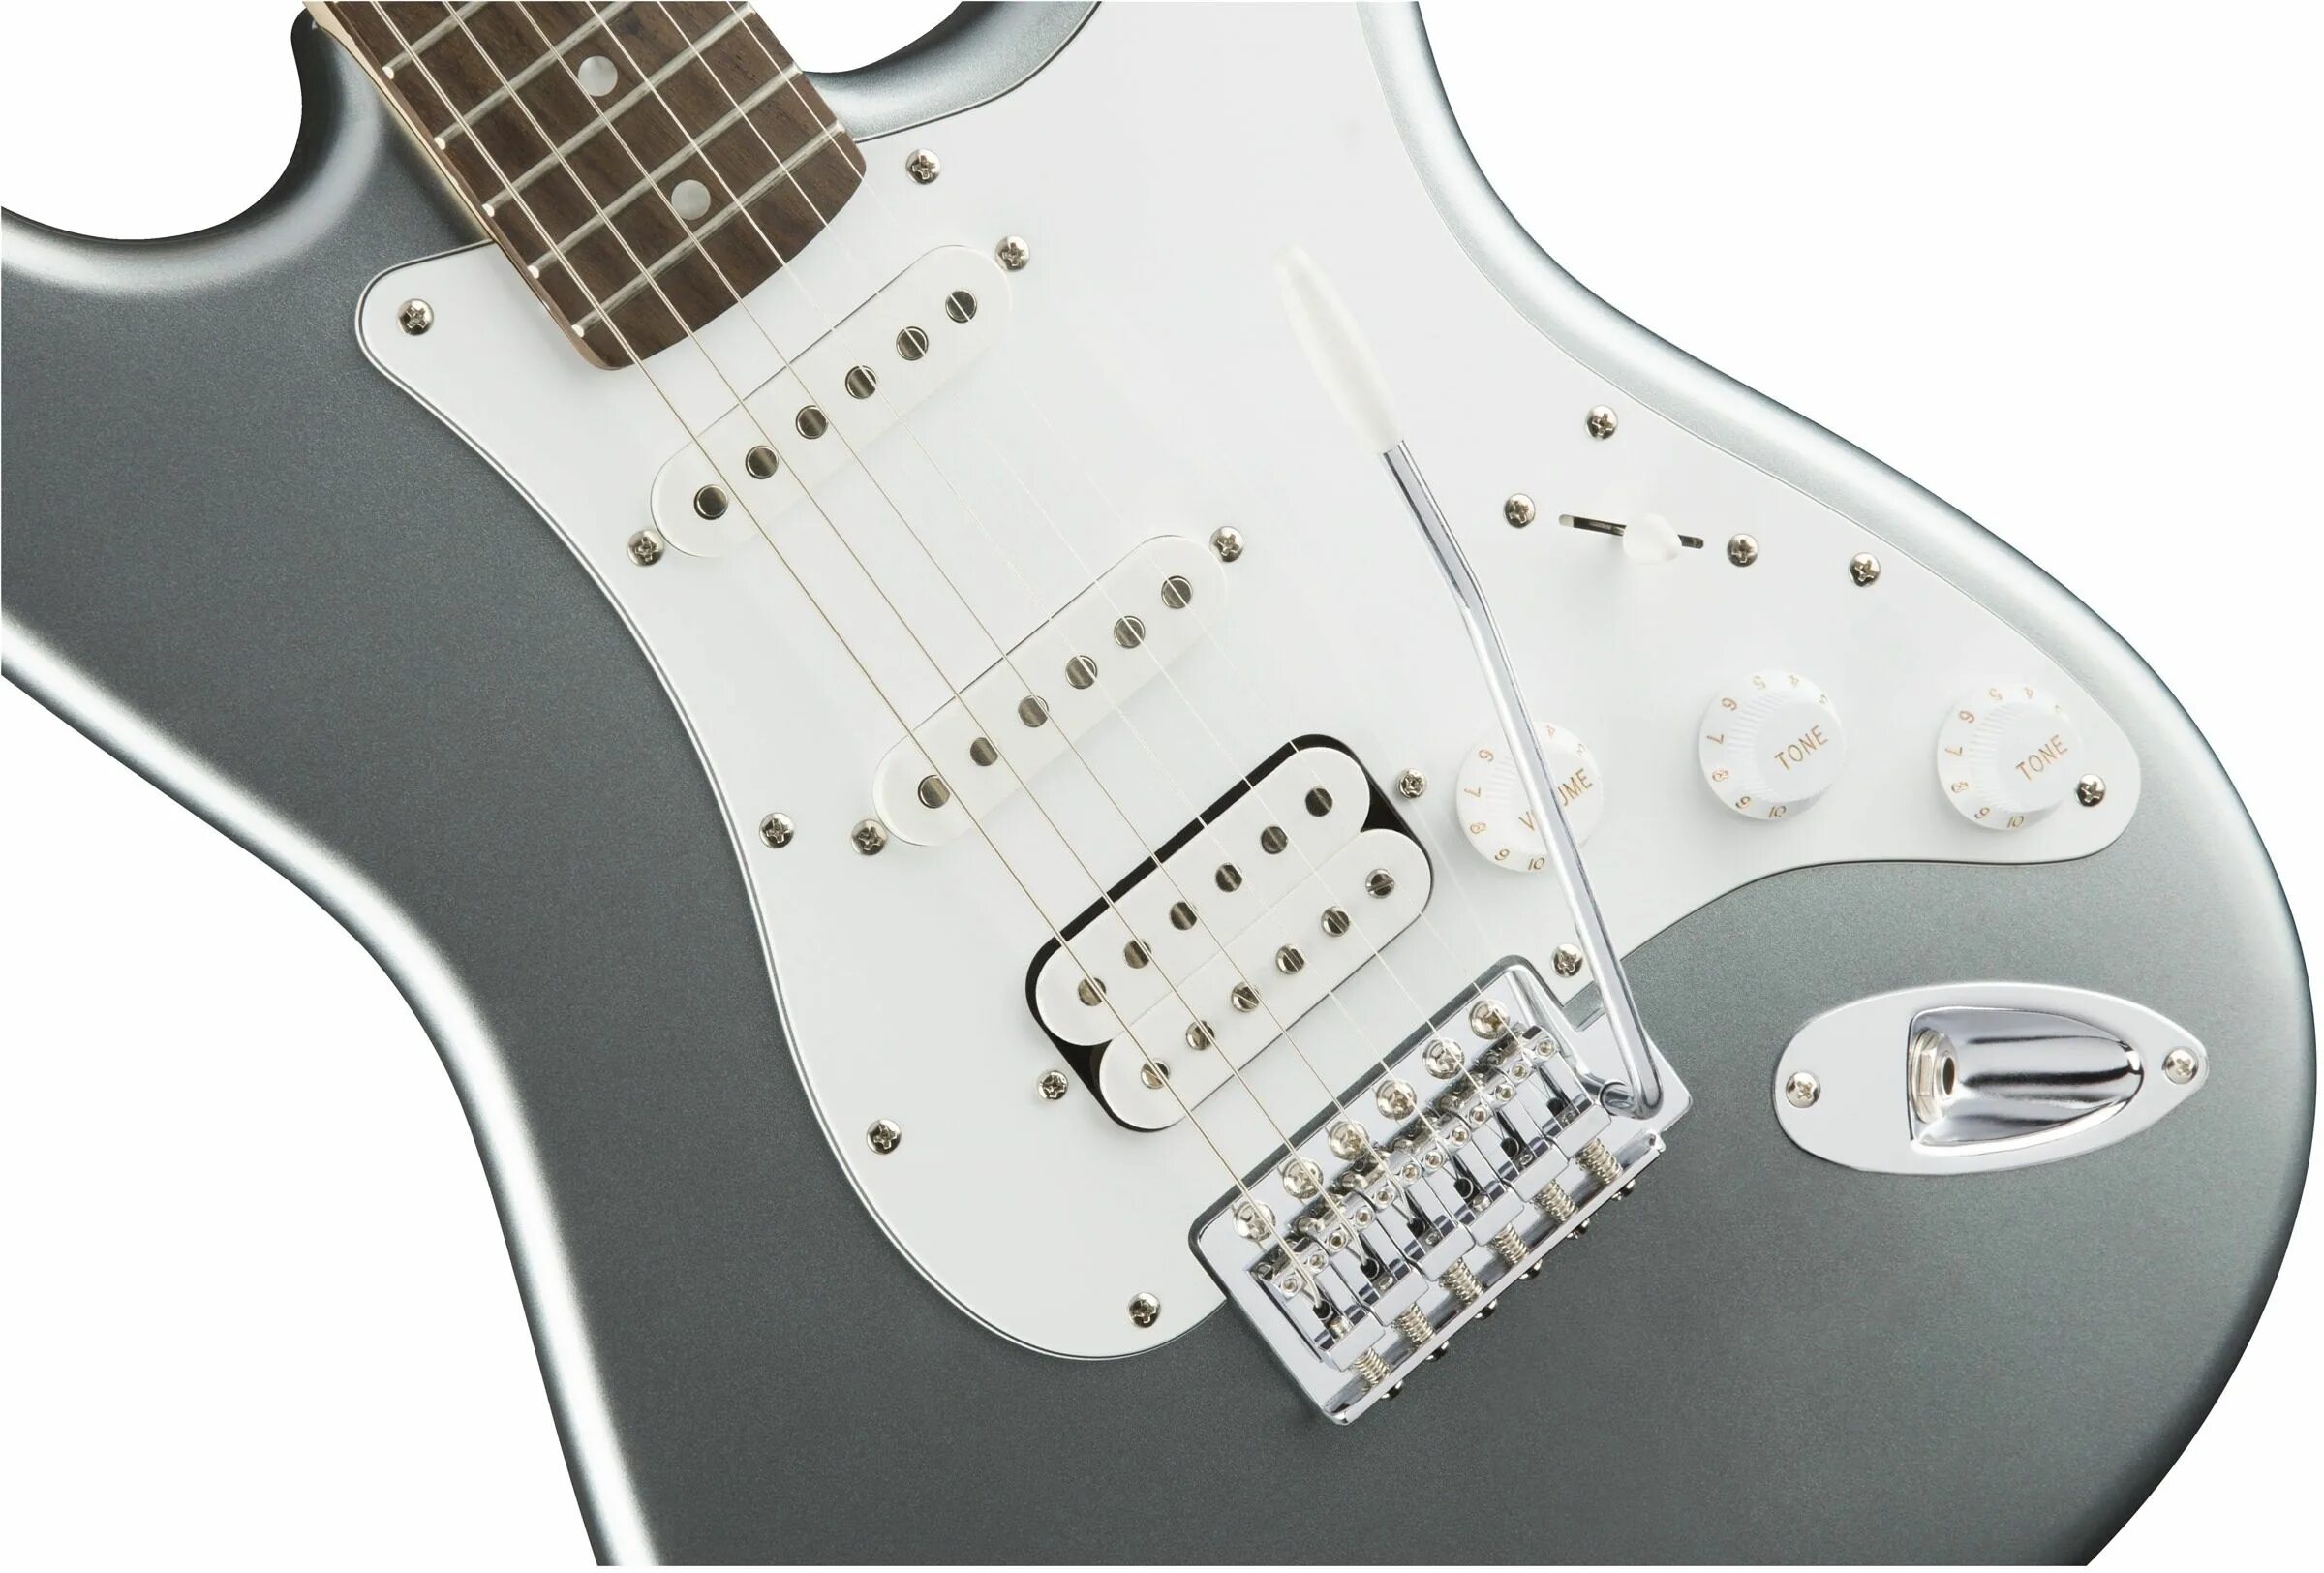 Электрогитара Squier Affinity Stratocaster. Электрогитара Fender Squier Stratocaster. Гитара Fender Squier Stratocaster Affinity. Электрогитара Fender Squier Affinity.